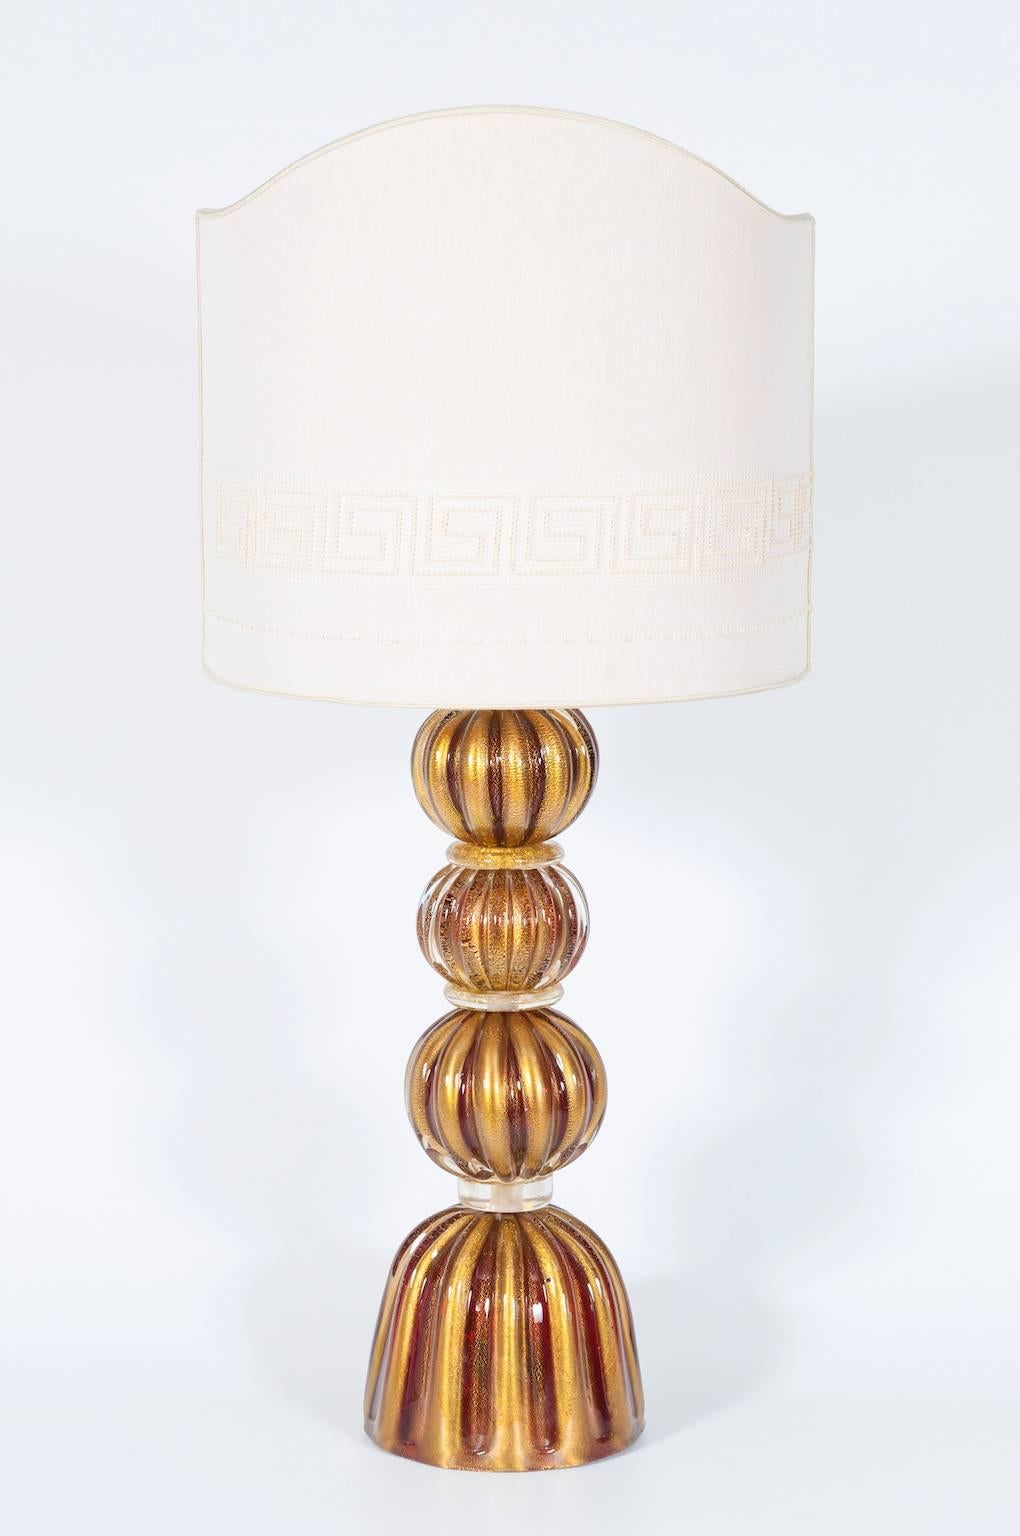 Eine zarte, bezaubernde Tischlampe aus Muranoglas mit Rubinkugeln und Goldakzenten aus den 1980er Jahren in Italien.
Diese bezaubernde Tischleuchte, die vollständig von Hand aus Muranoglas gefertigt wird, strahlt Eleganz und Zeitlosigkeit aus. Das